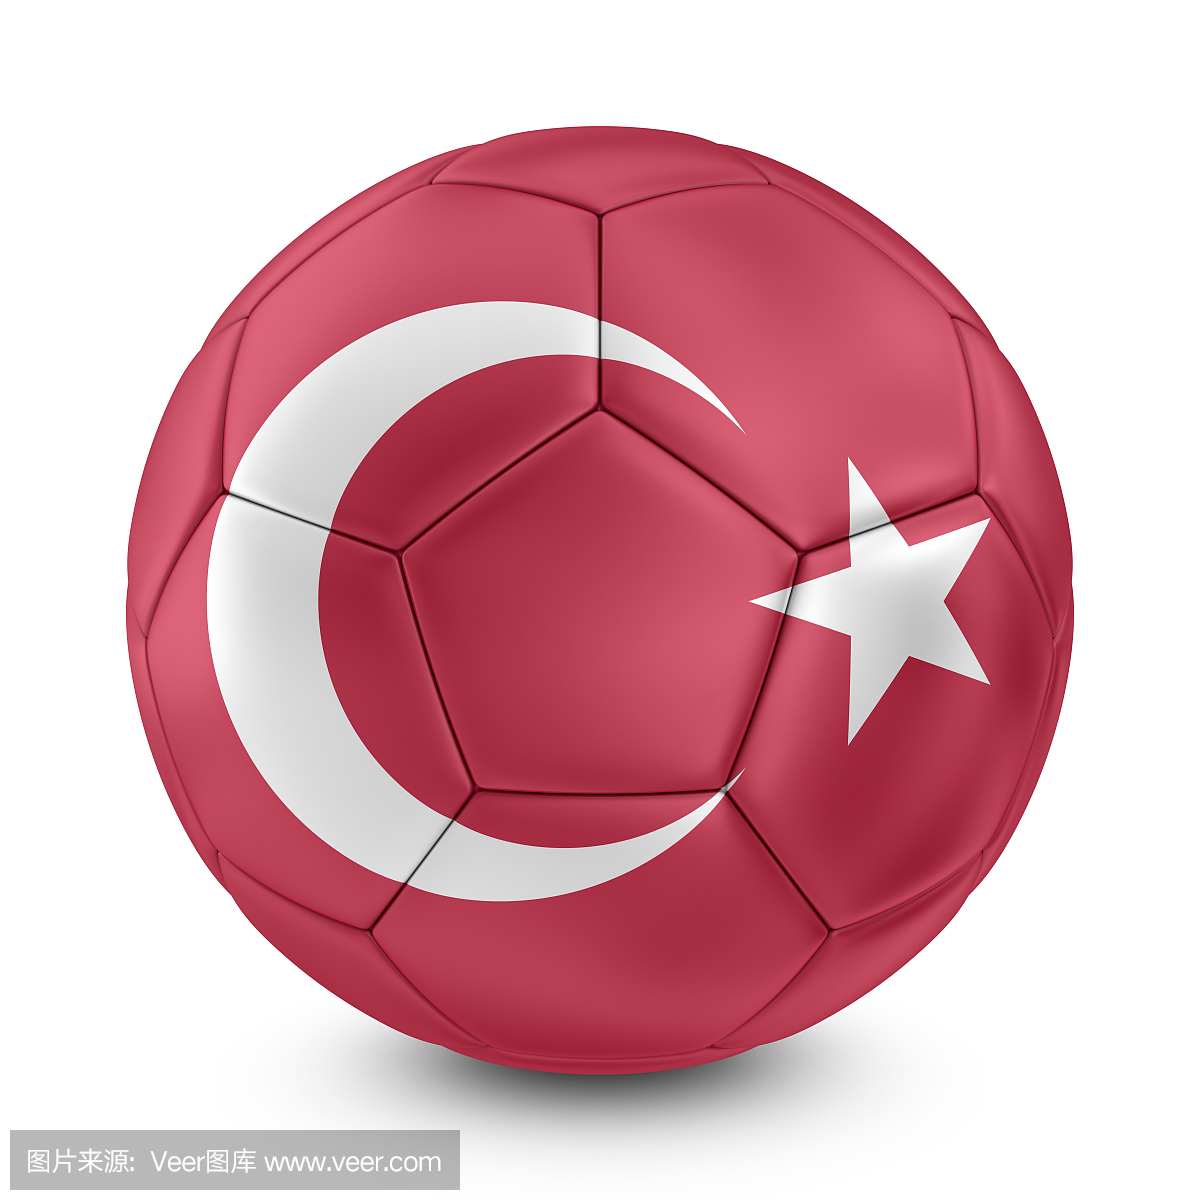 土耳其国旗在足球